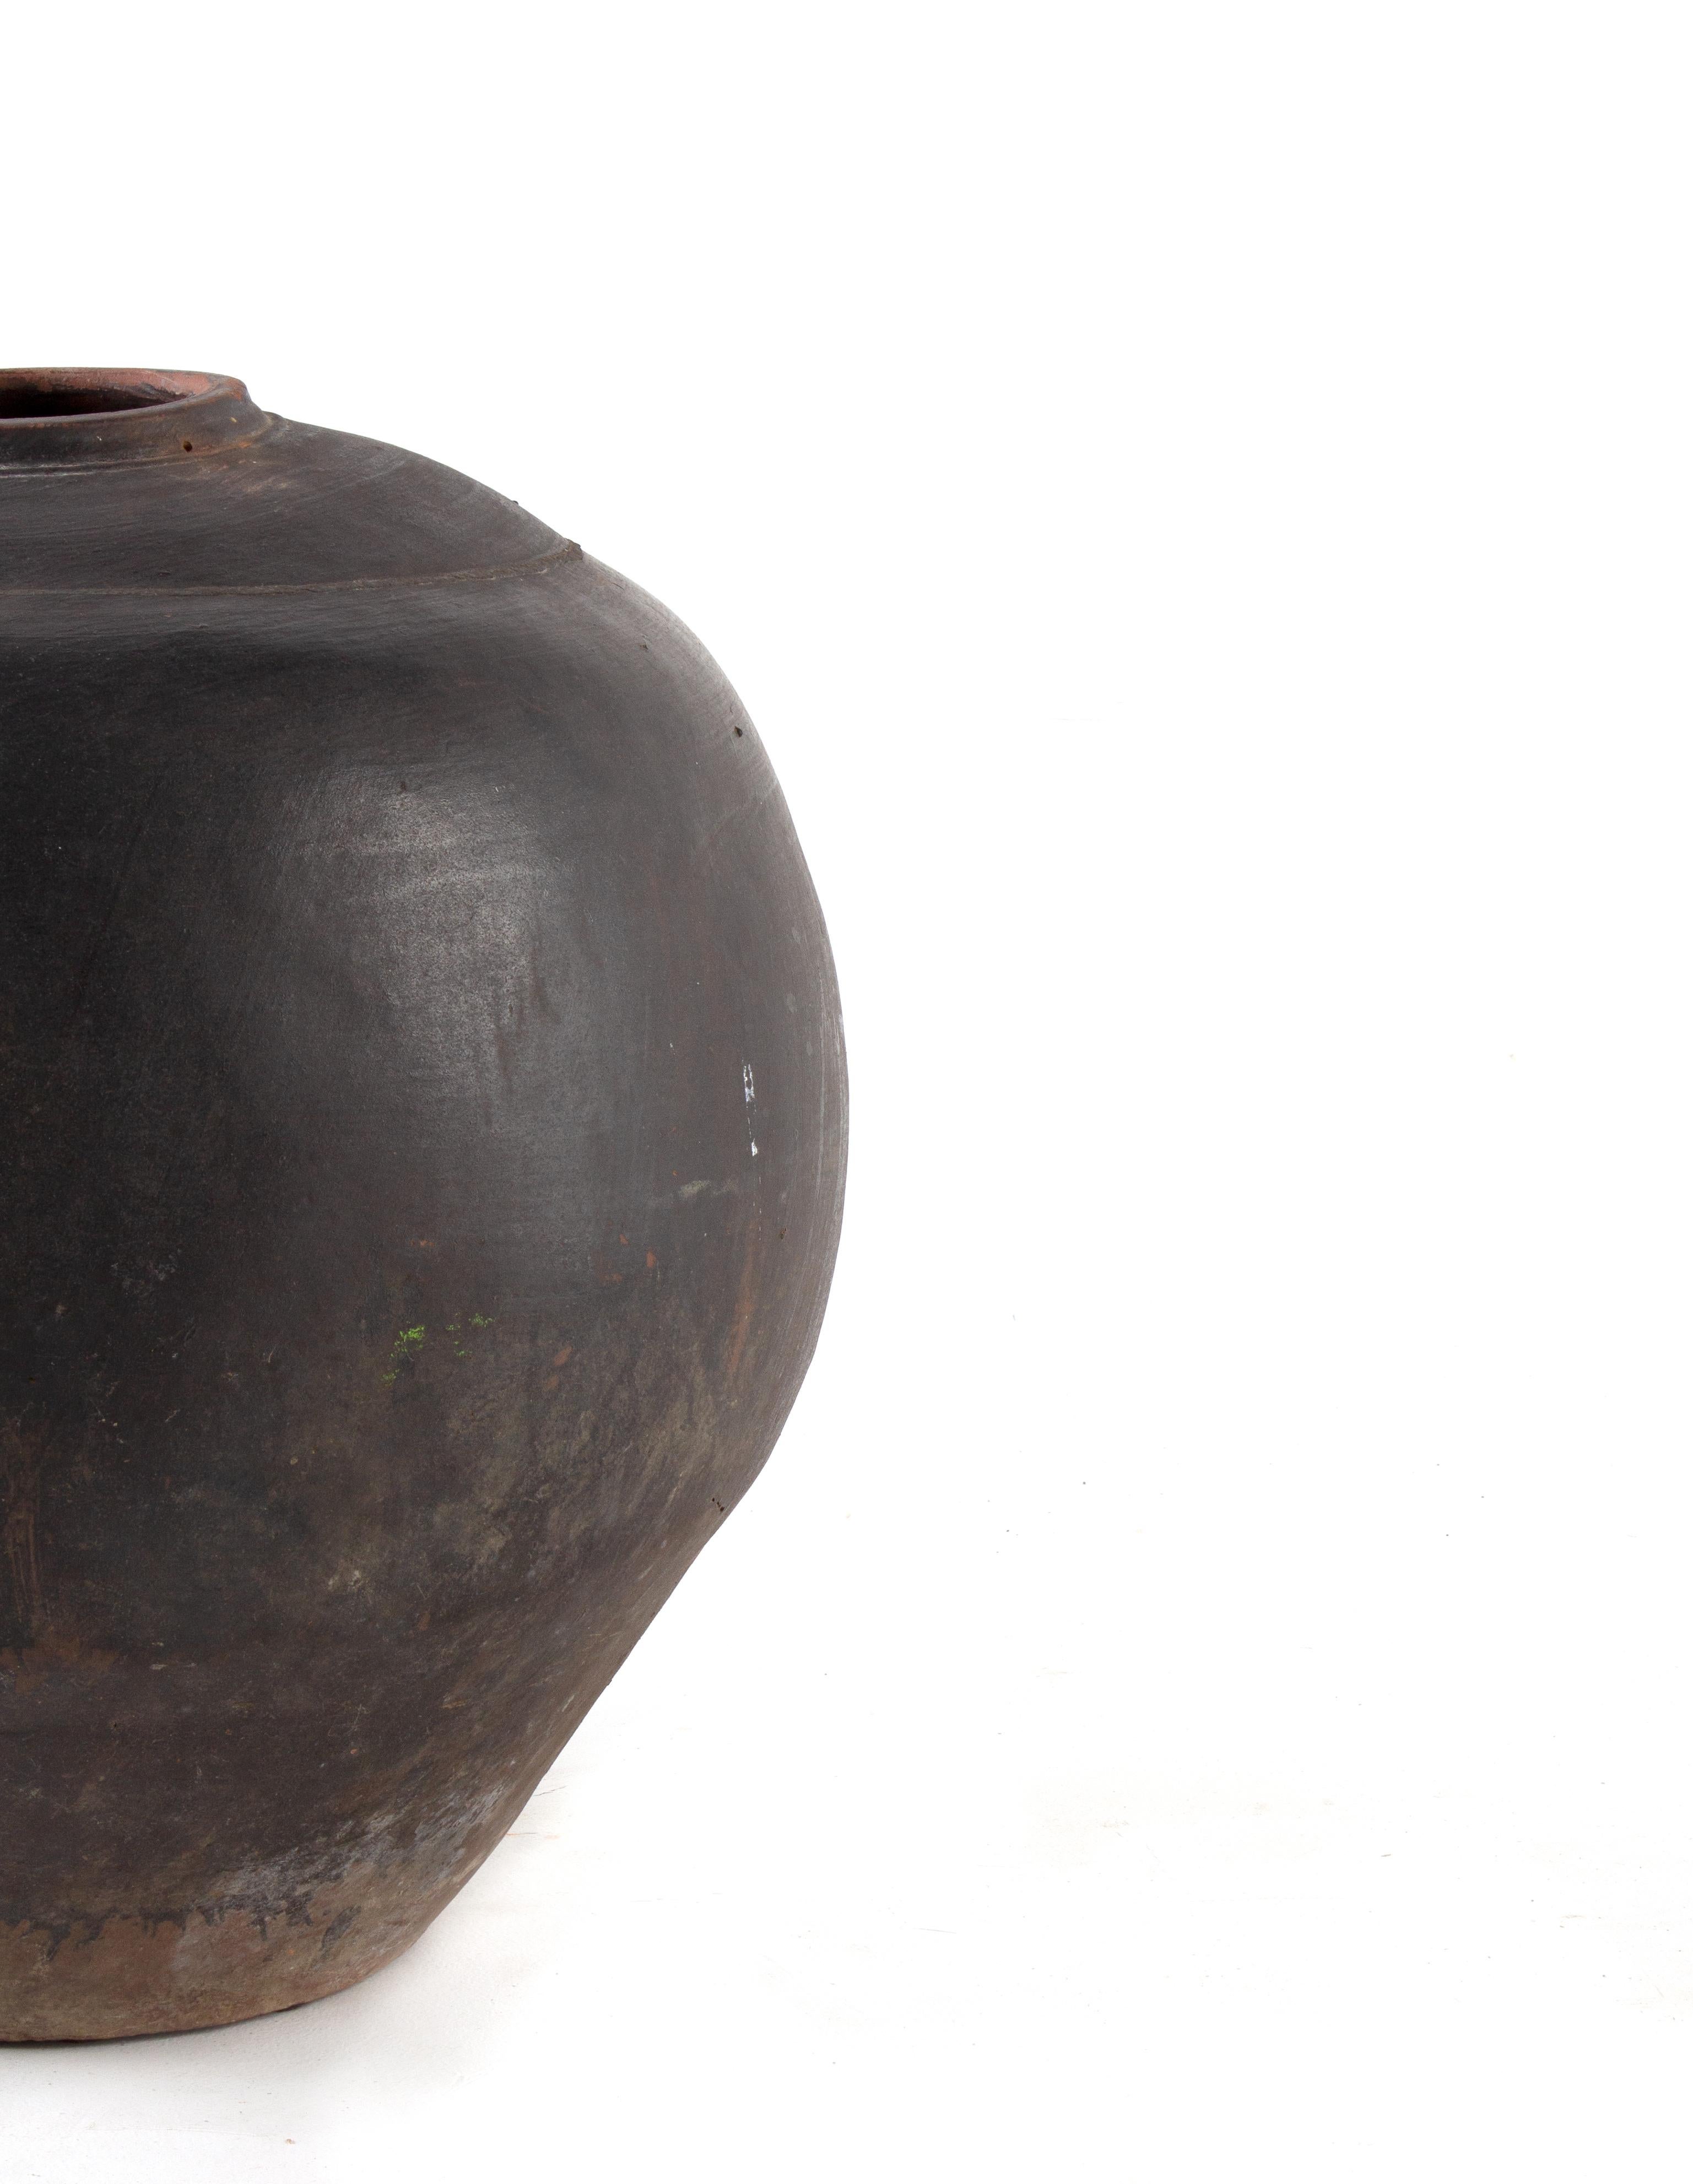 Antique terracotta storage jar.